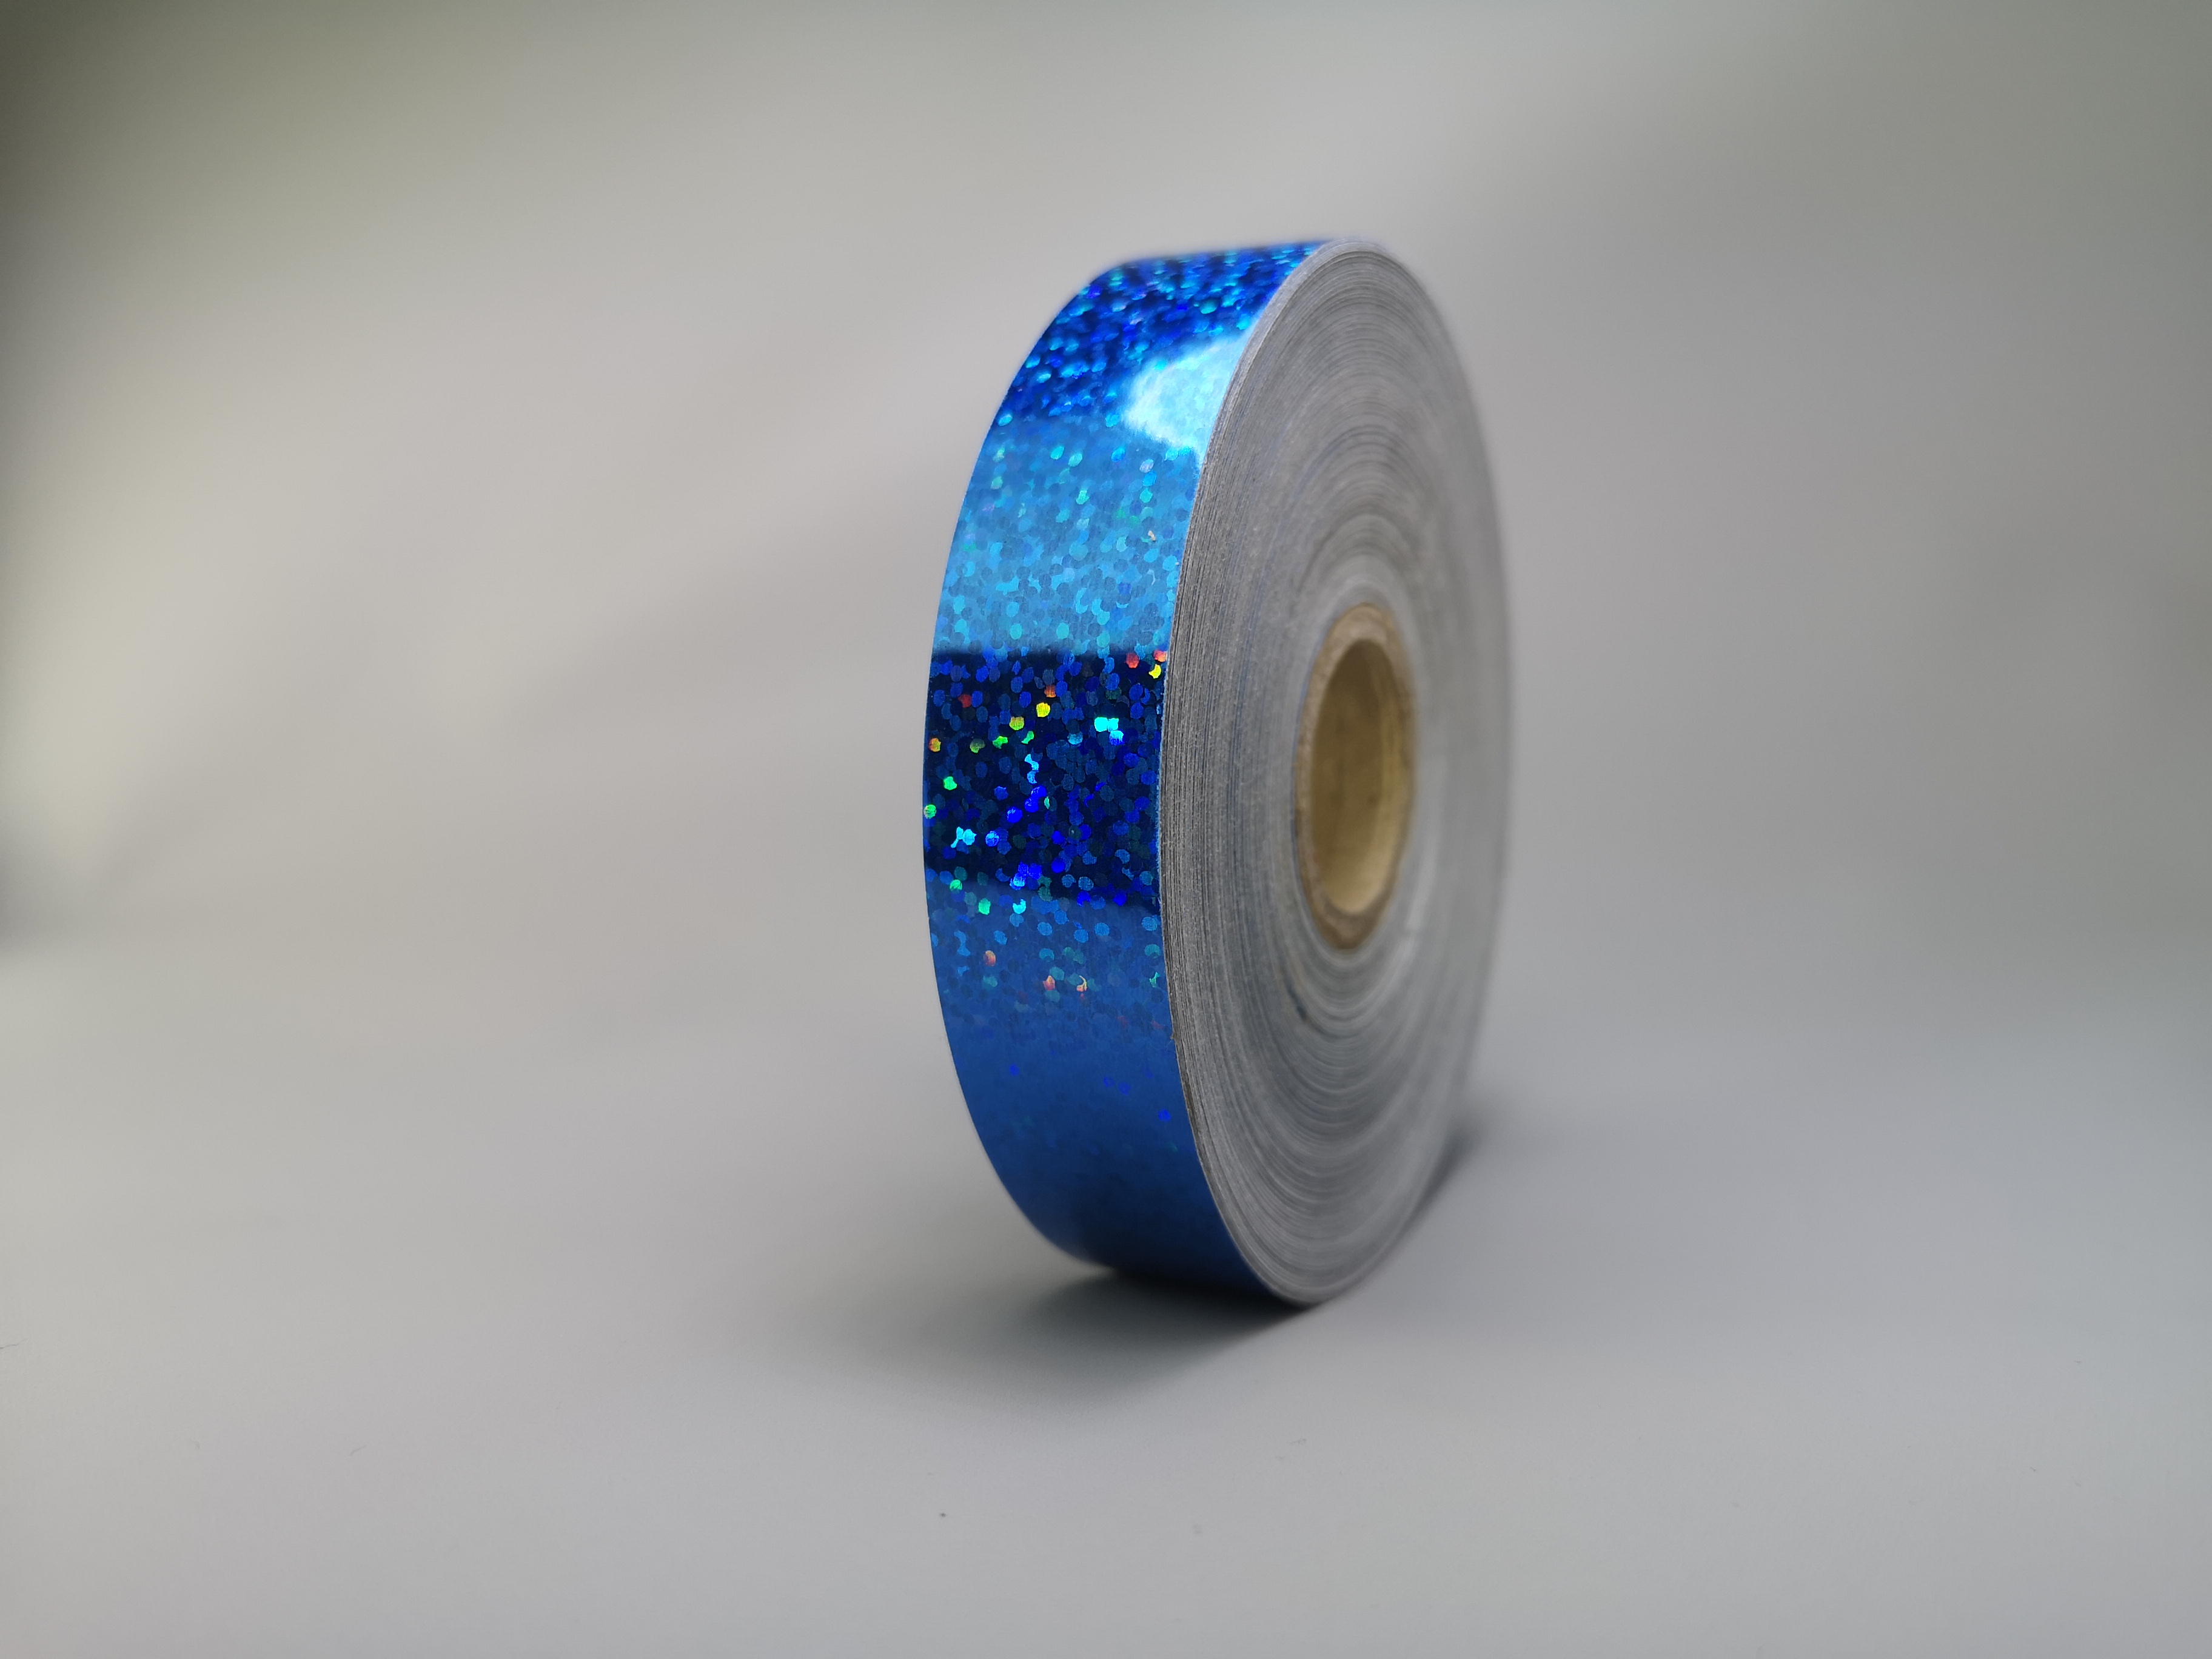 Holo Sequin Sparcle Blue 25m Deco-Tape